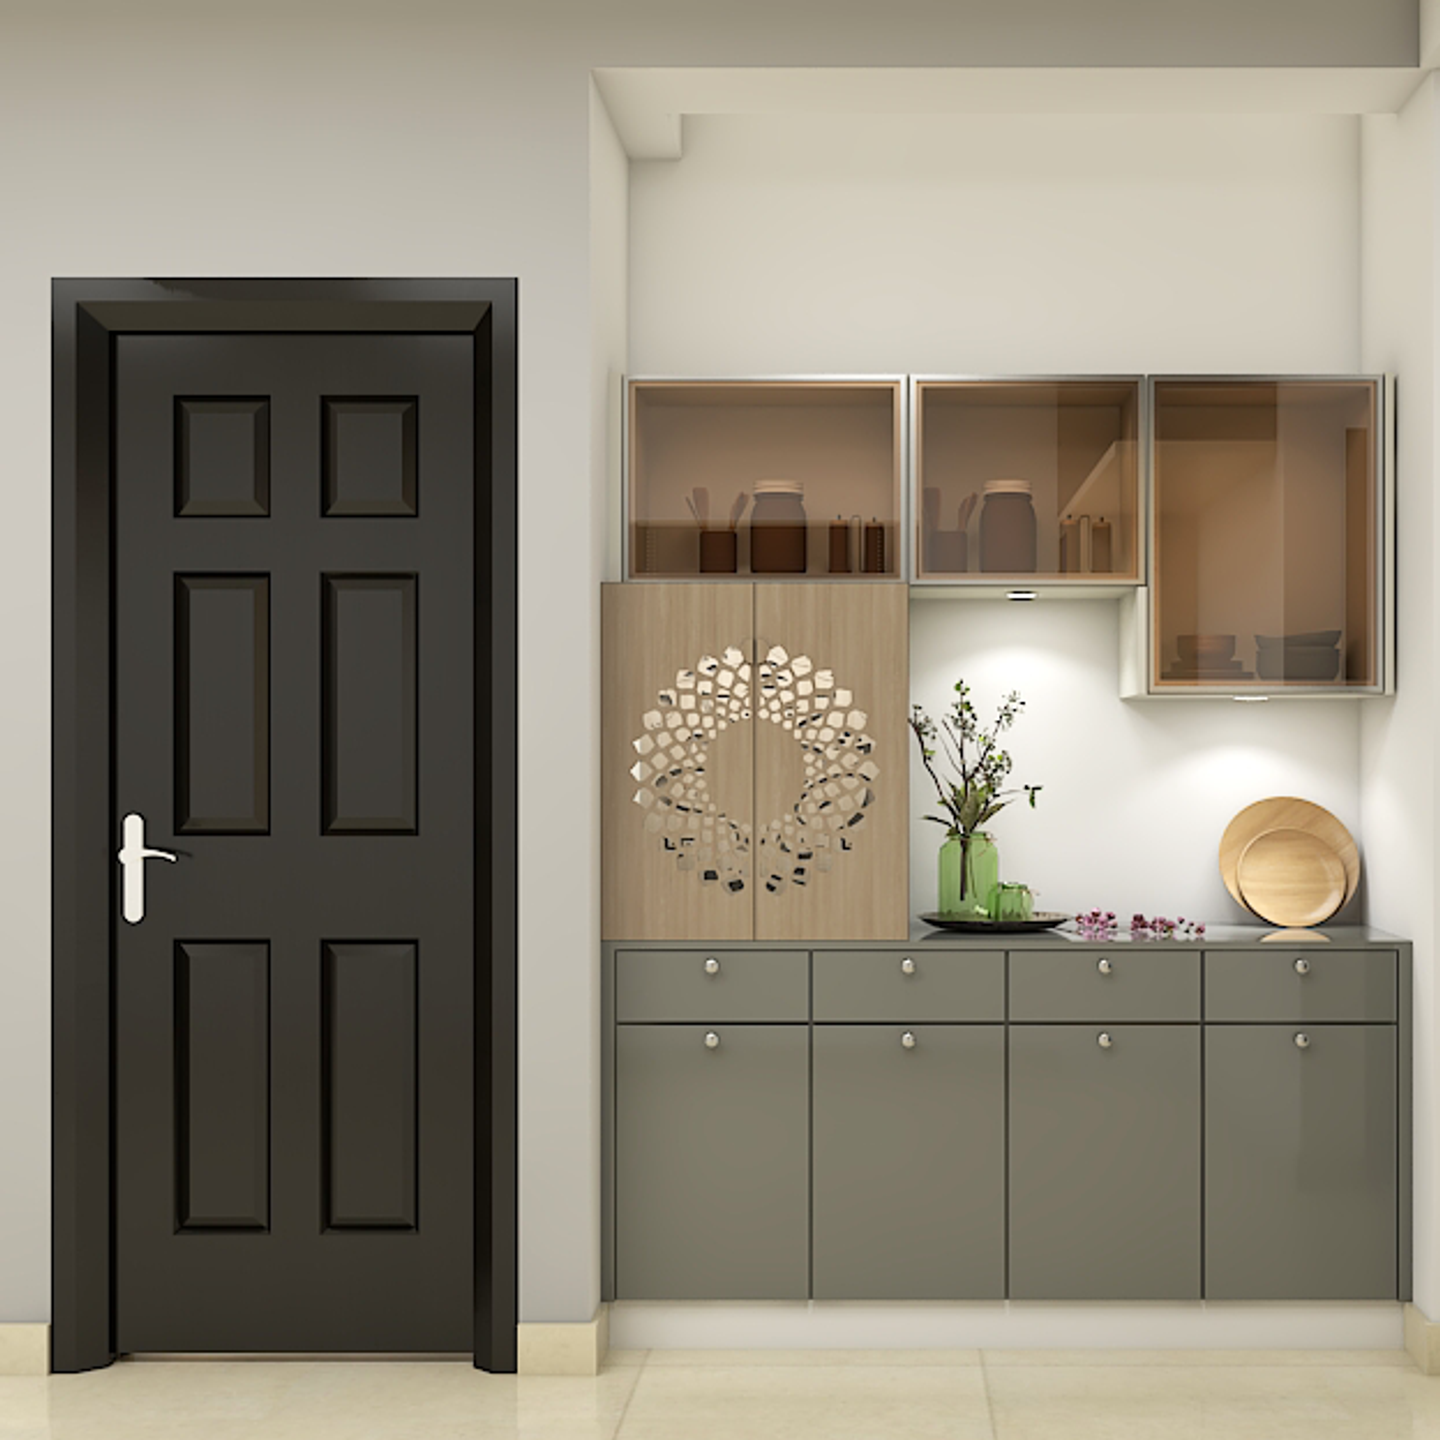 Contrasting Modern Foyer Design - Livspace